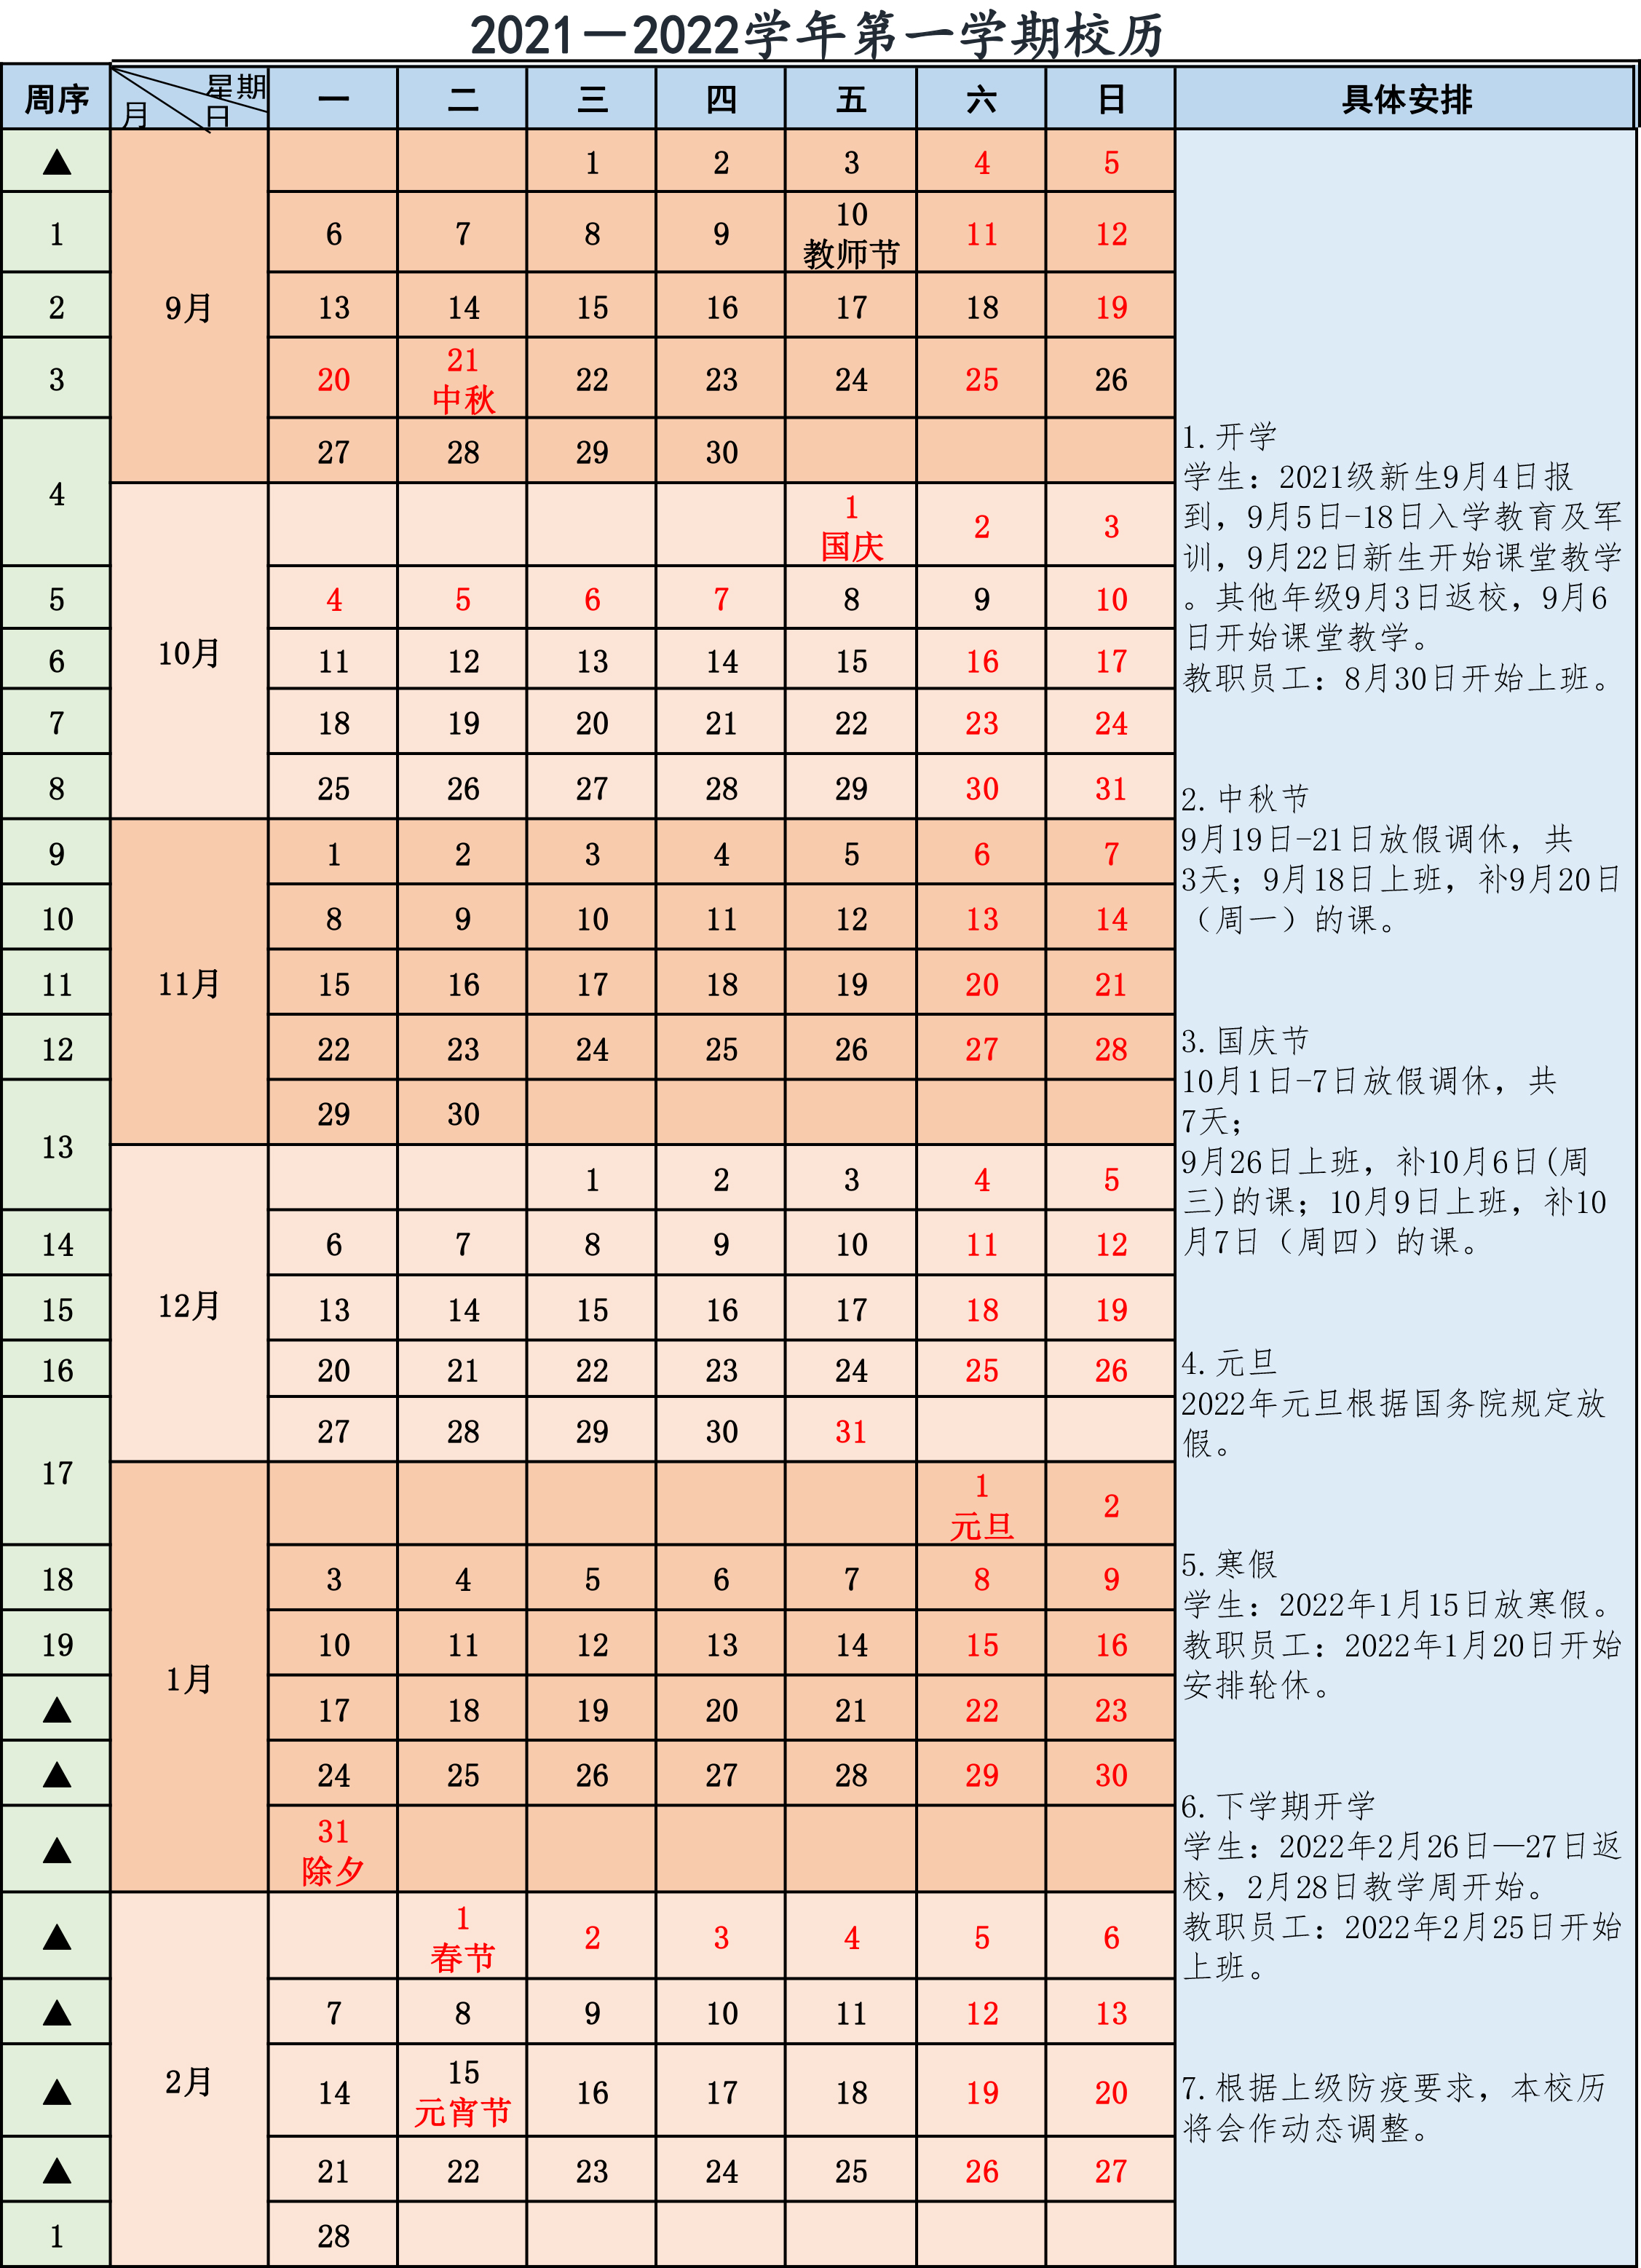 河南师范大学2022-2023年校历 河南师范大学作息时间表_艺术类院校分数线